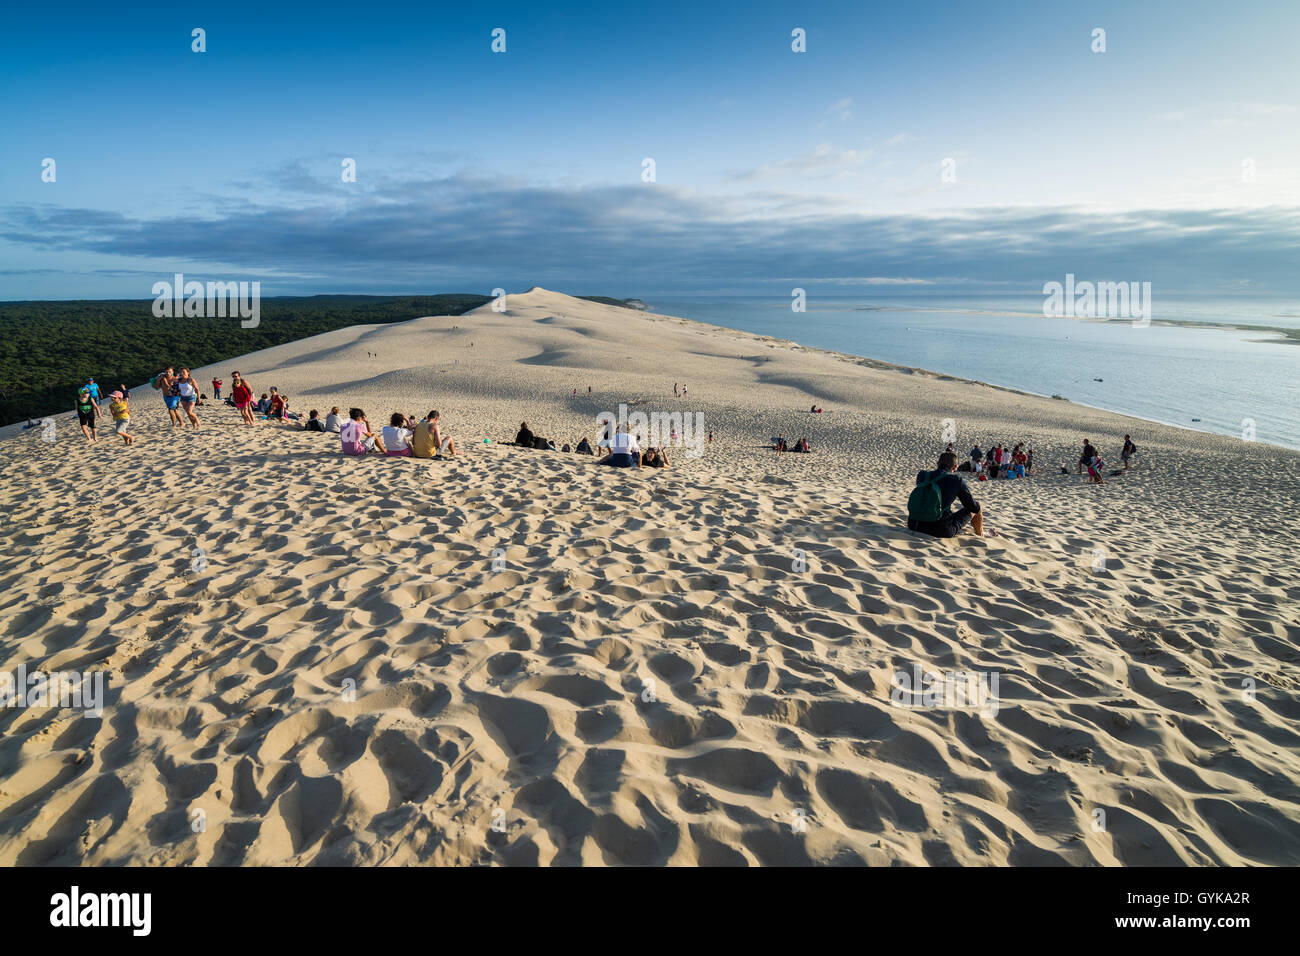 Les touristes sur la Dune du Pyla, Arcachon, France Banque D'Images